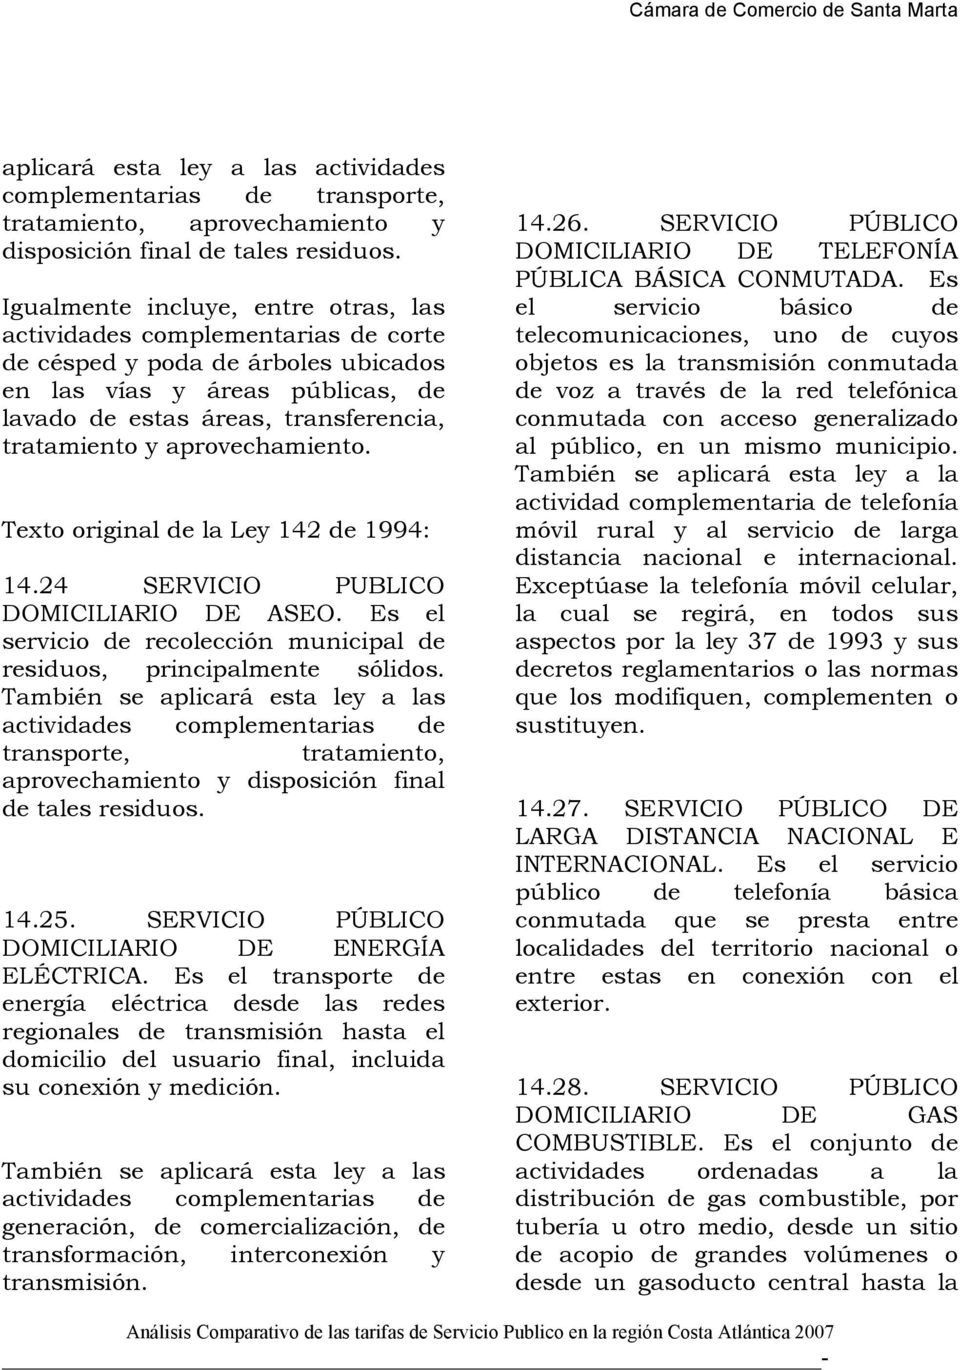 aprovechamiento. Texto original de la Ley 142 de 1994: 14.24 SERVICIO PUBLICO DOMICILIARIO DE ASEO. Es el servicio de recolección municipal de residuos, principalmente sólidos. También se  14.25.